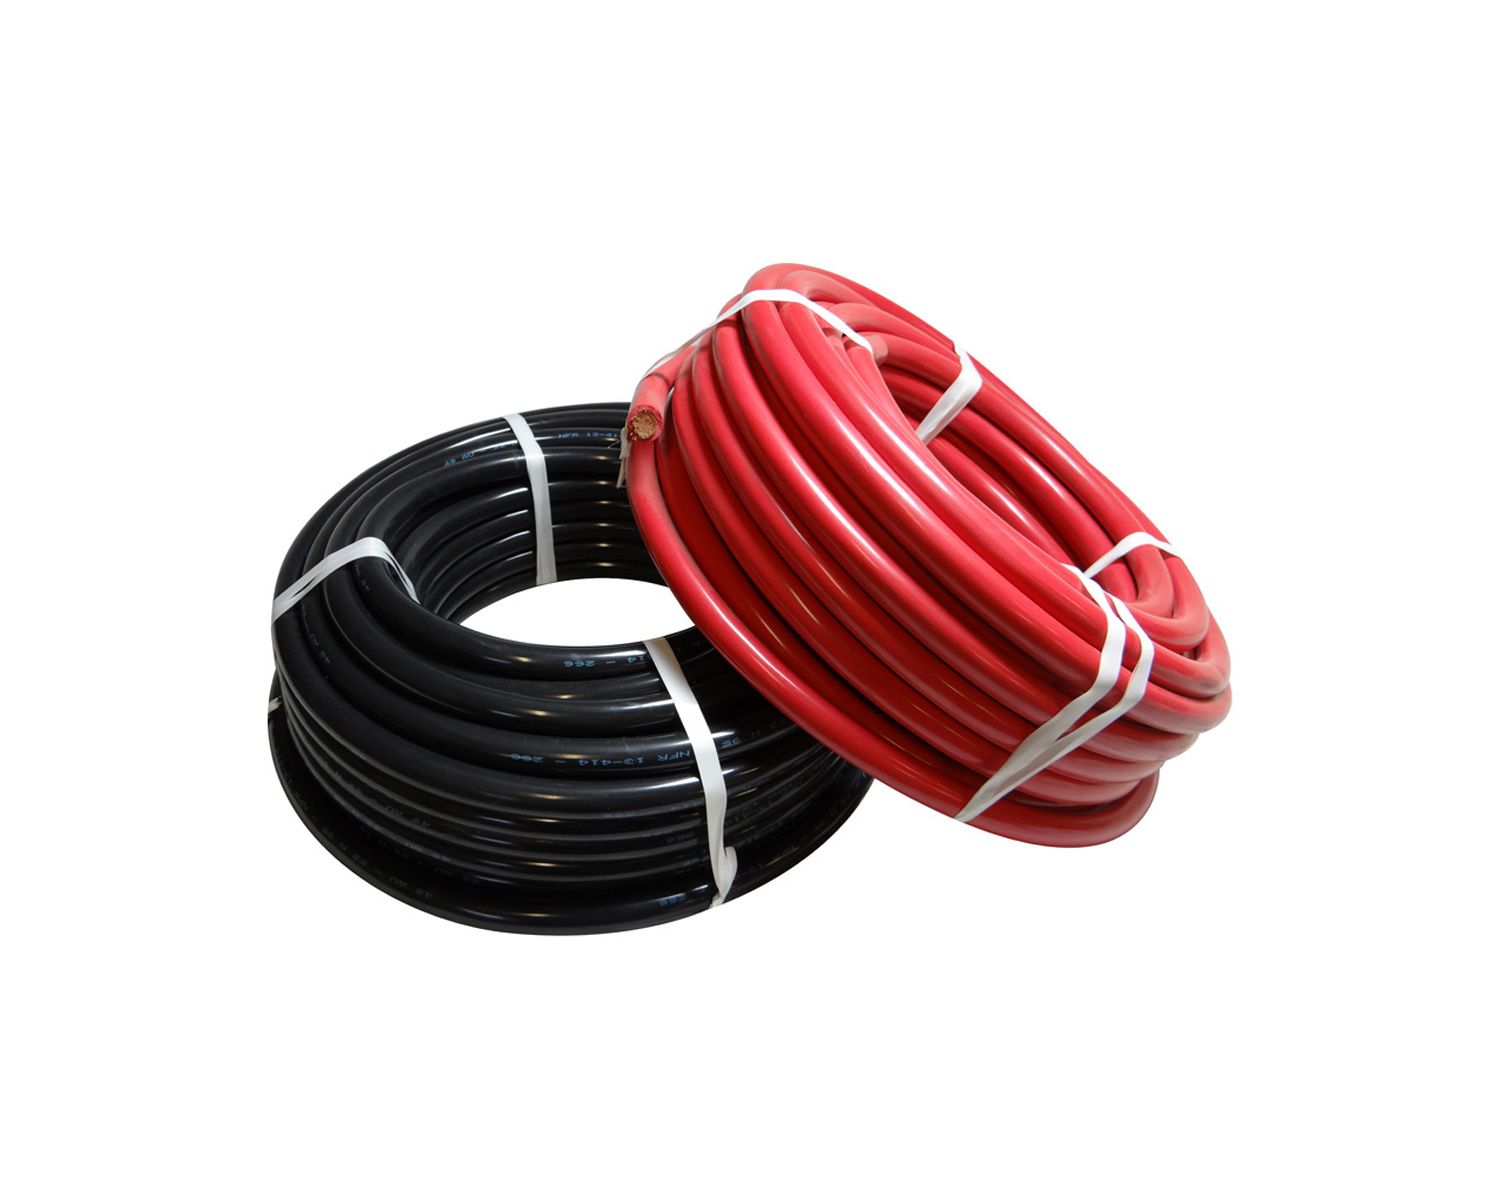 5 m Cable souple rouge 10mm2 multibrin pour cablage des systèmes